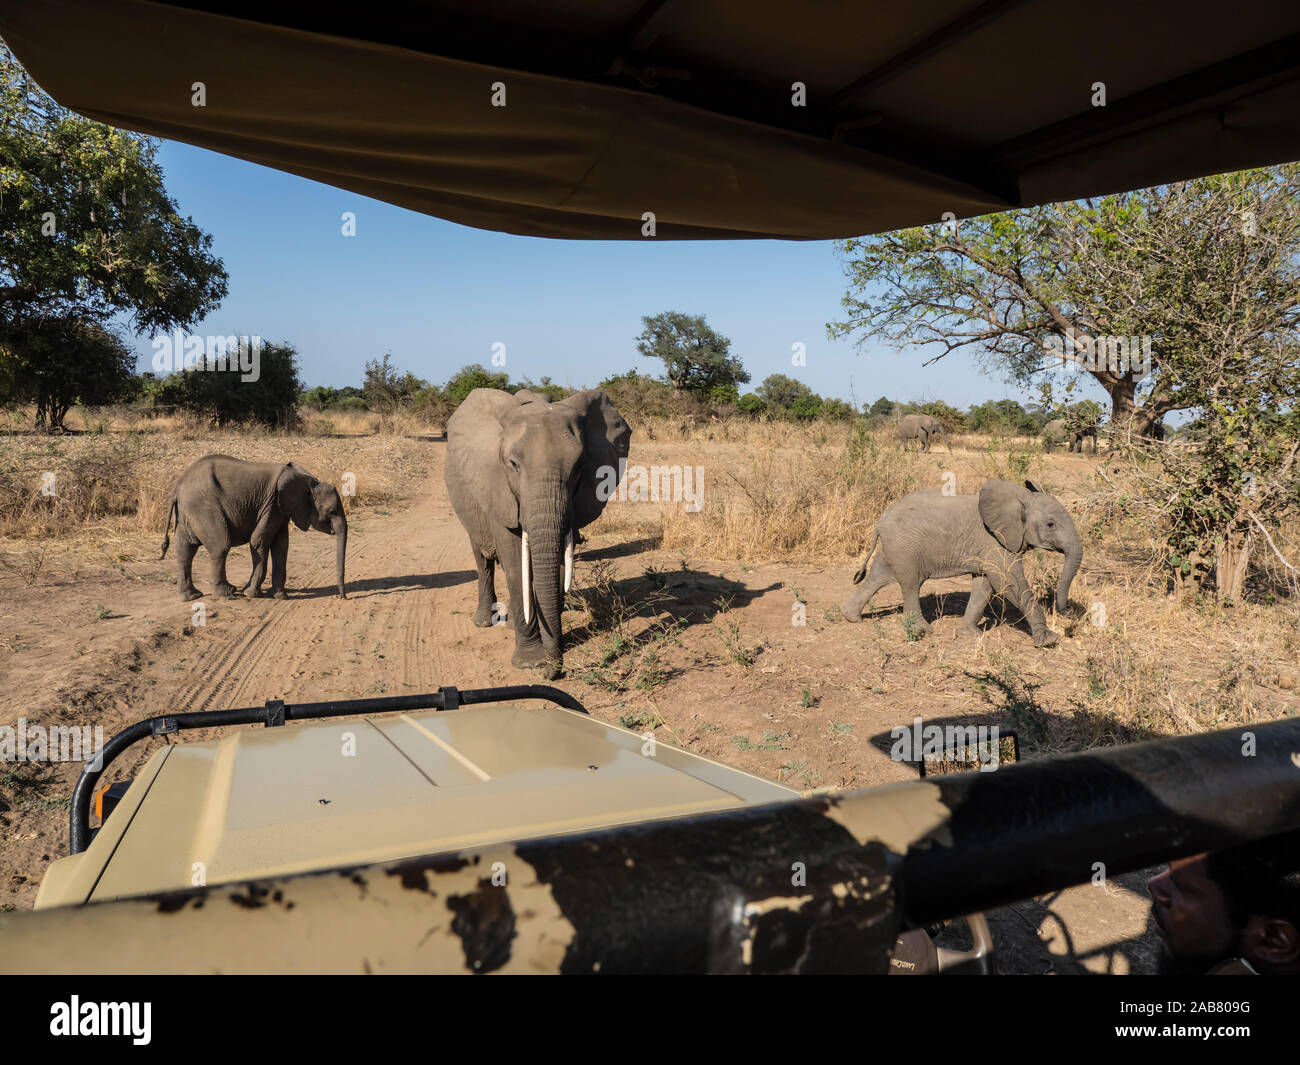 Bush de l'Afrique de l'éléphant (Loxodonta africana), près d'un camion safari dans le parc national de South Luangwa, en Zambie, l'Afrique Banque D'Images